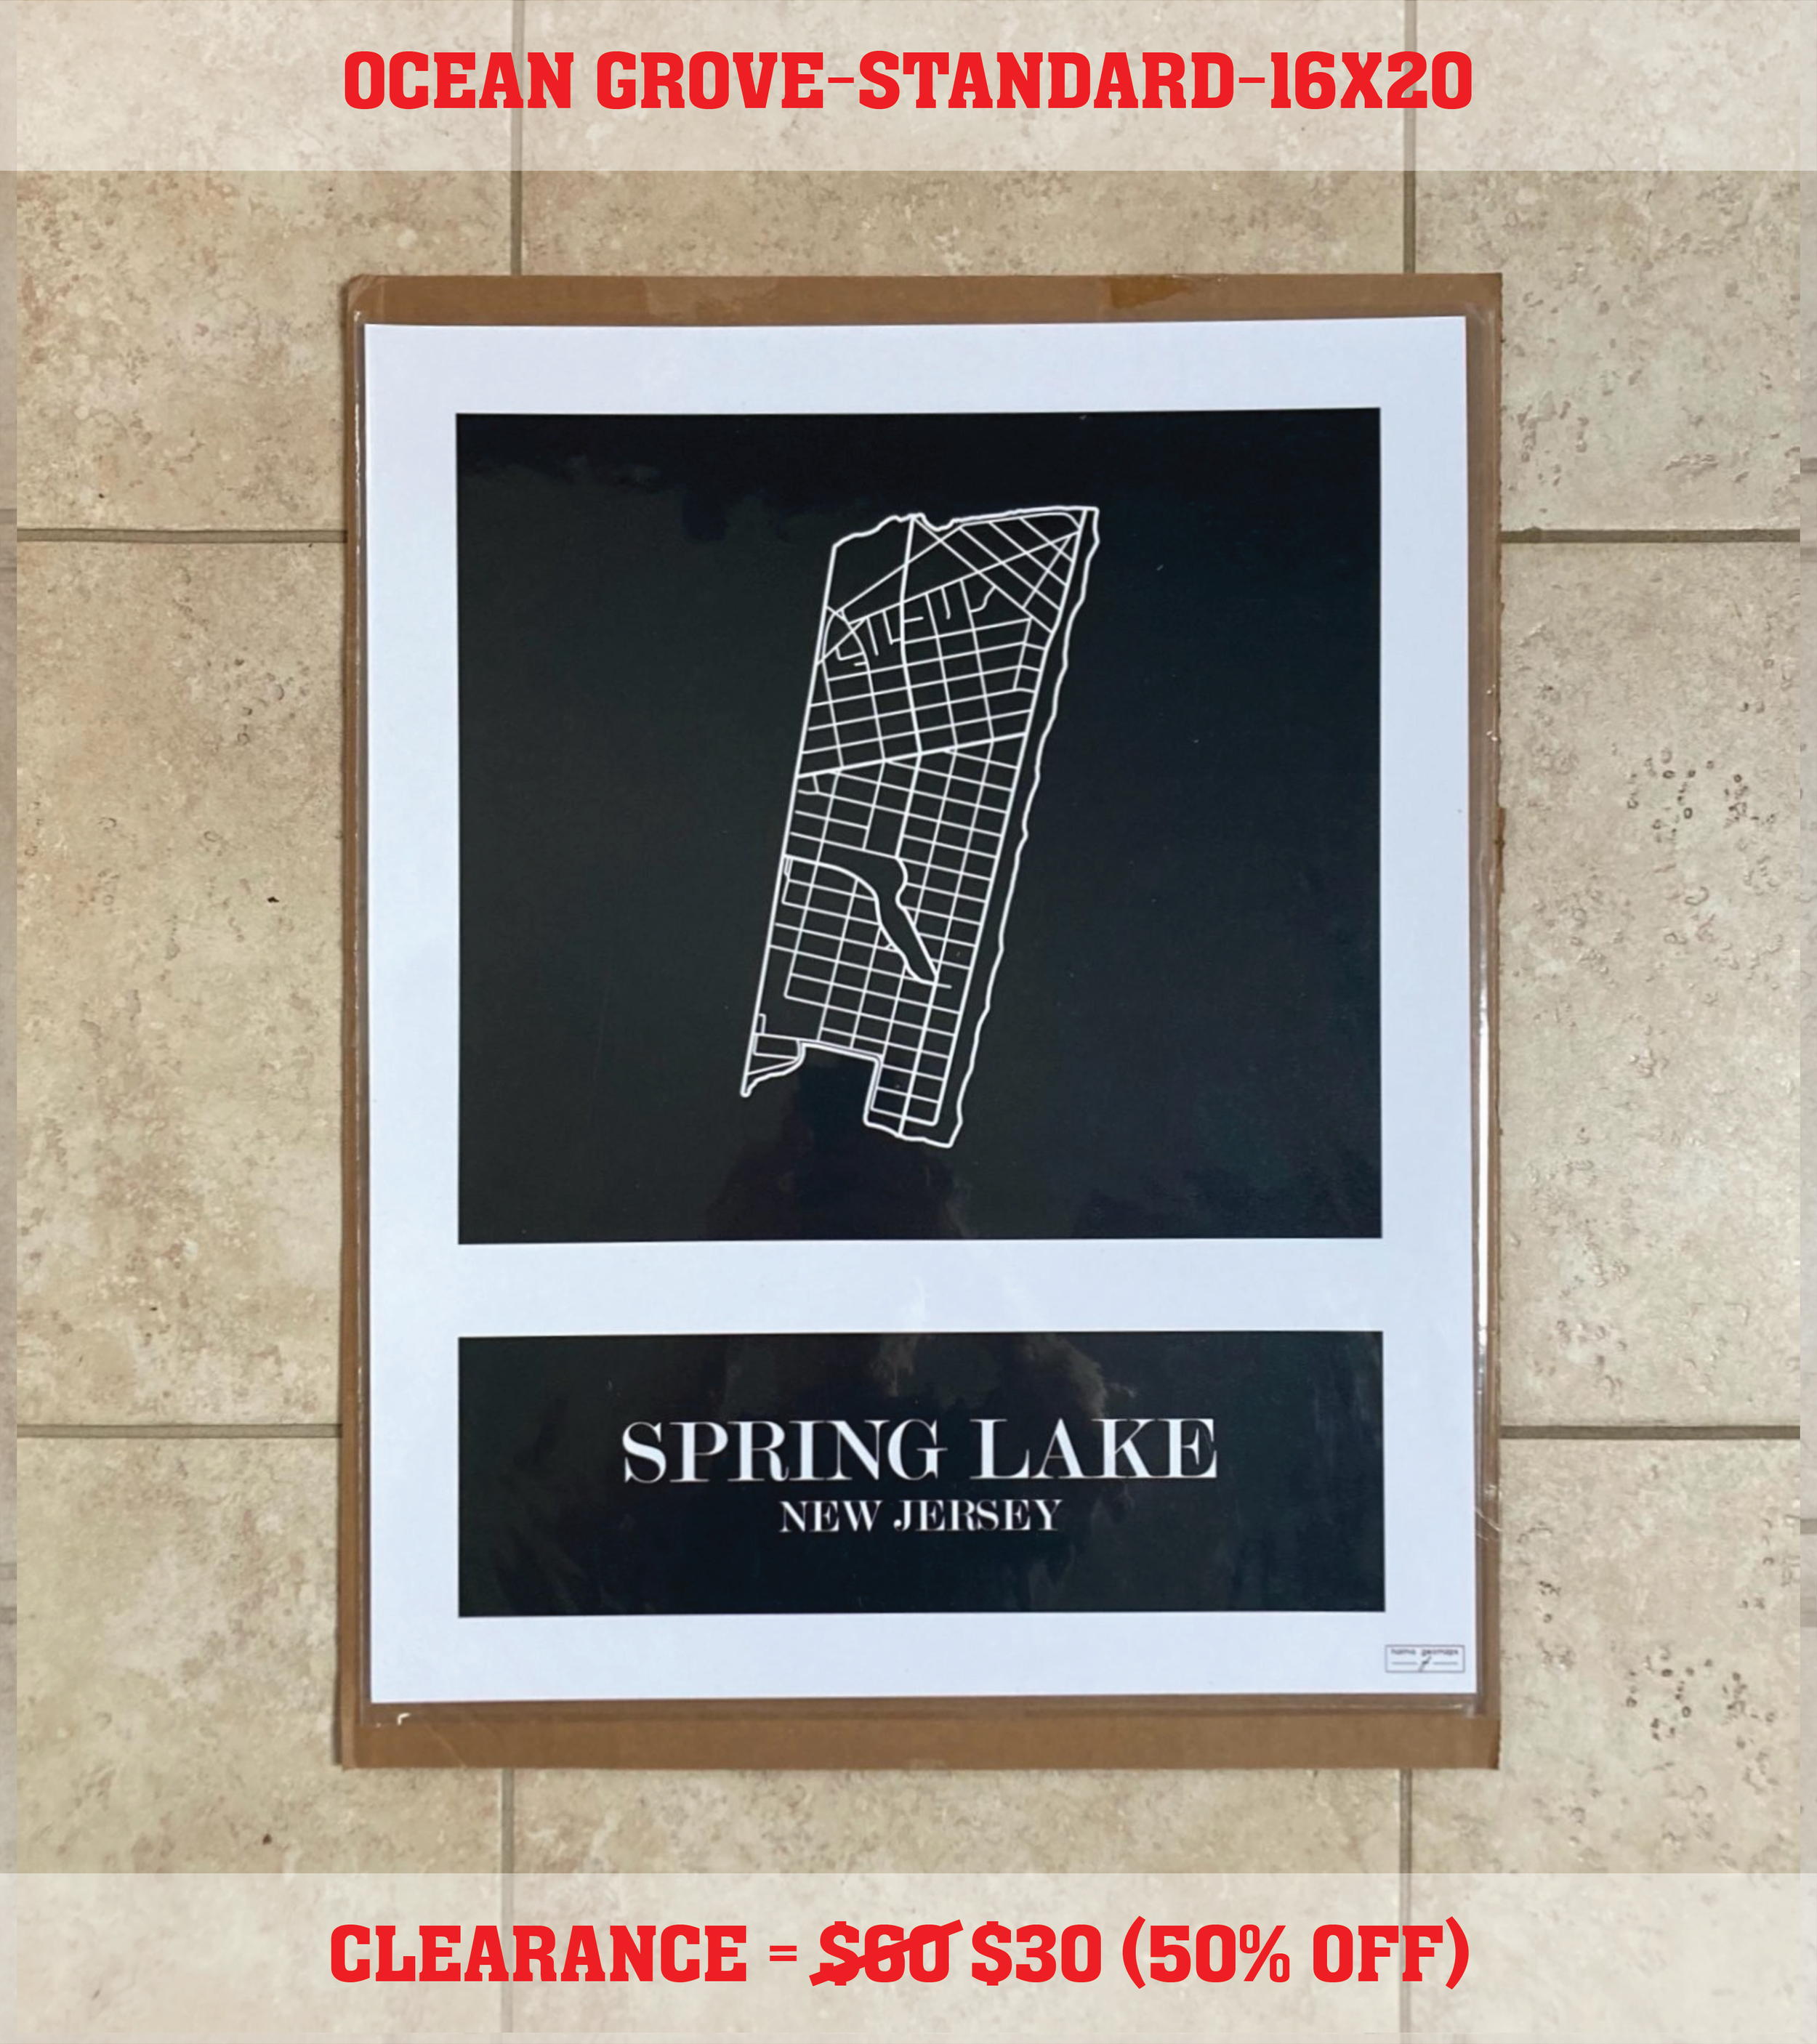 Spring Lake (16x20) Standard